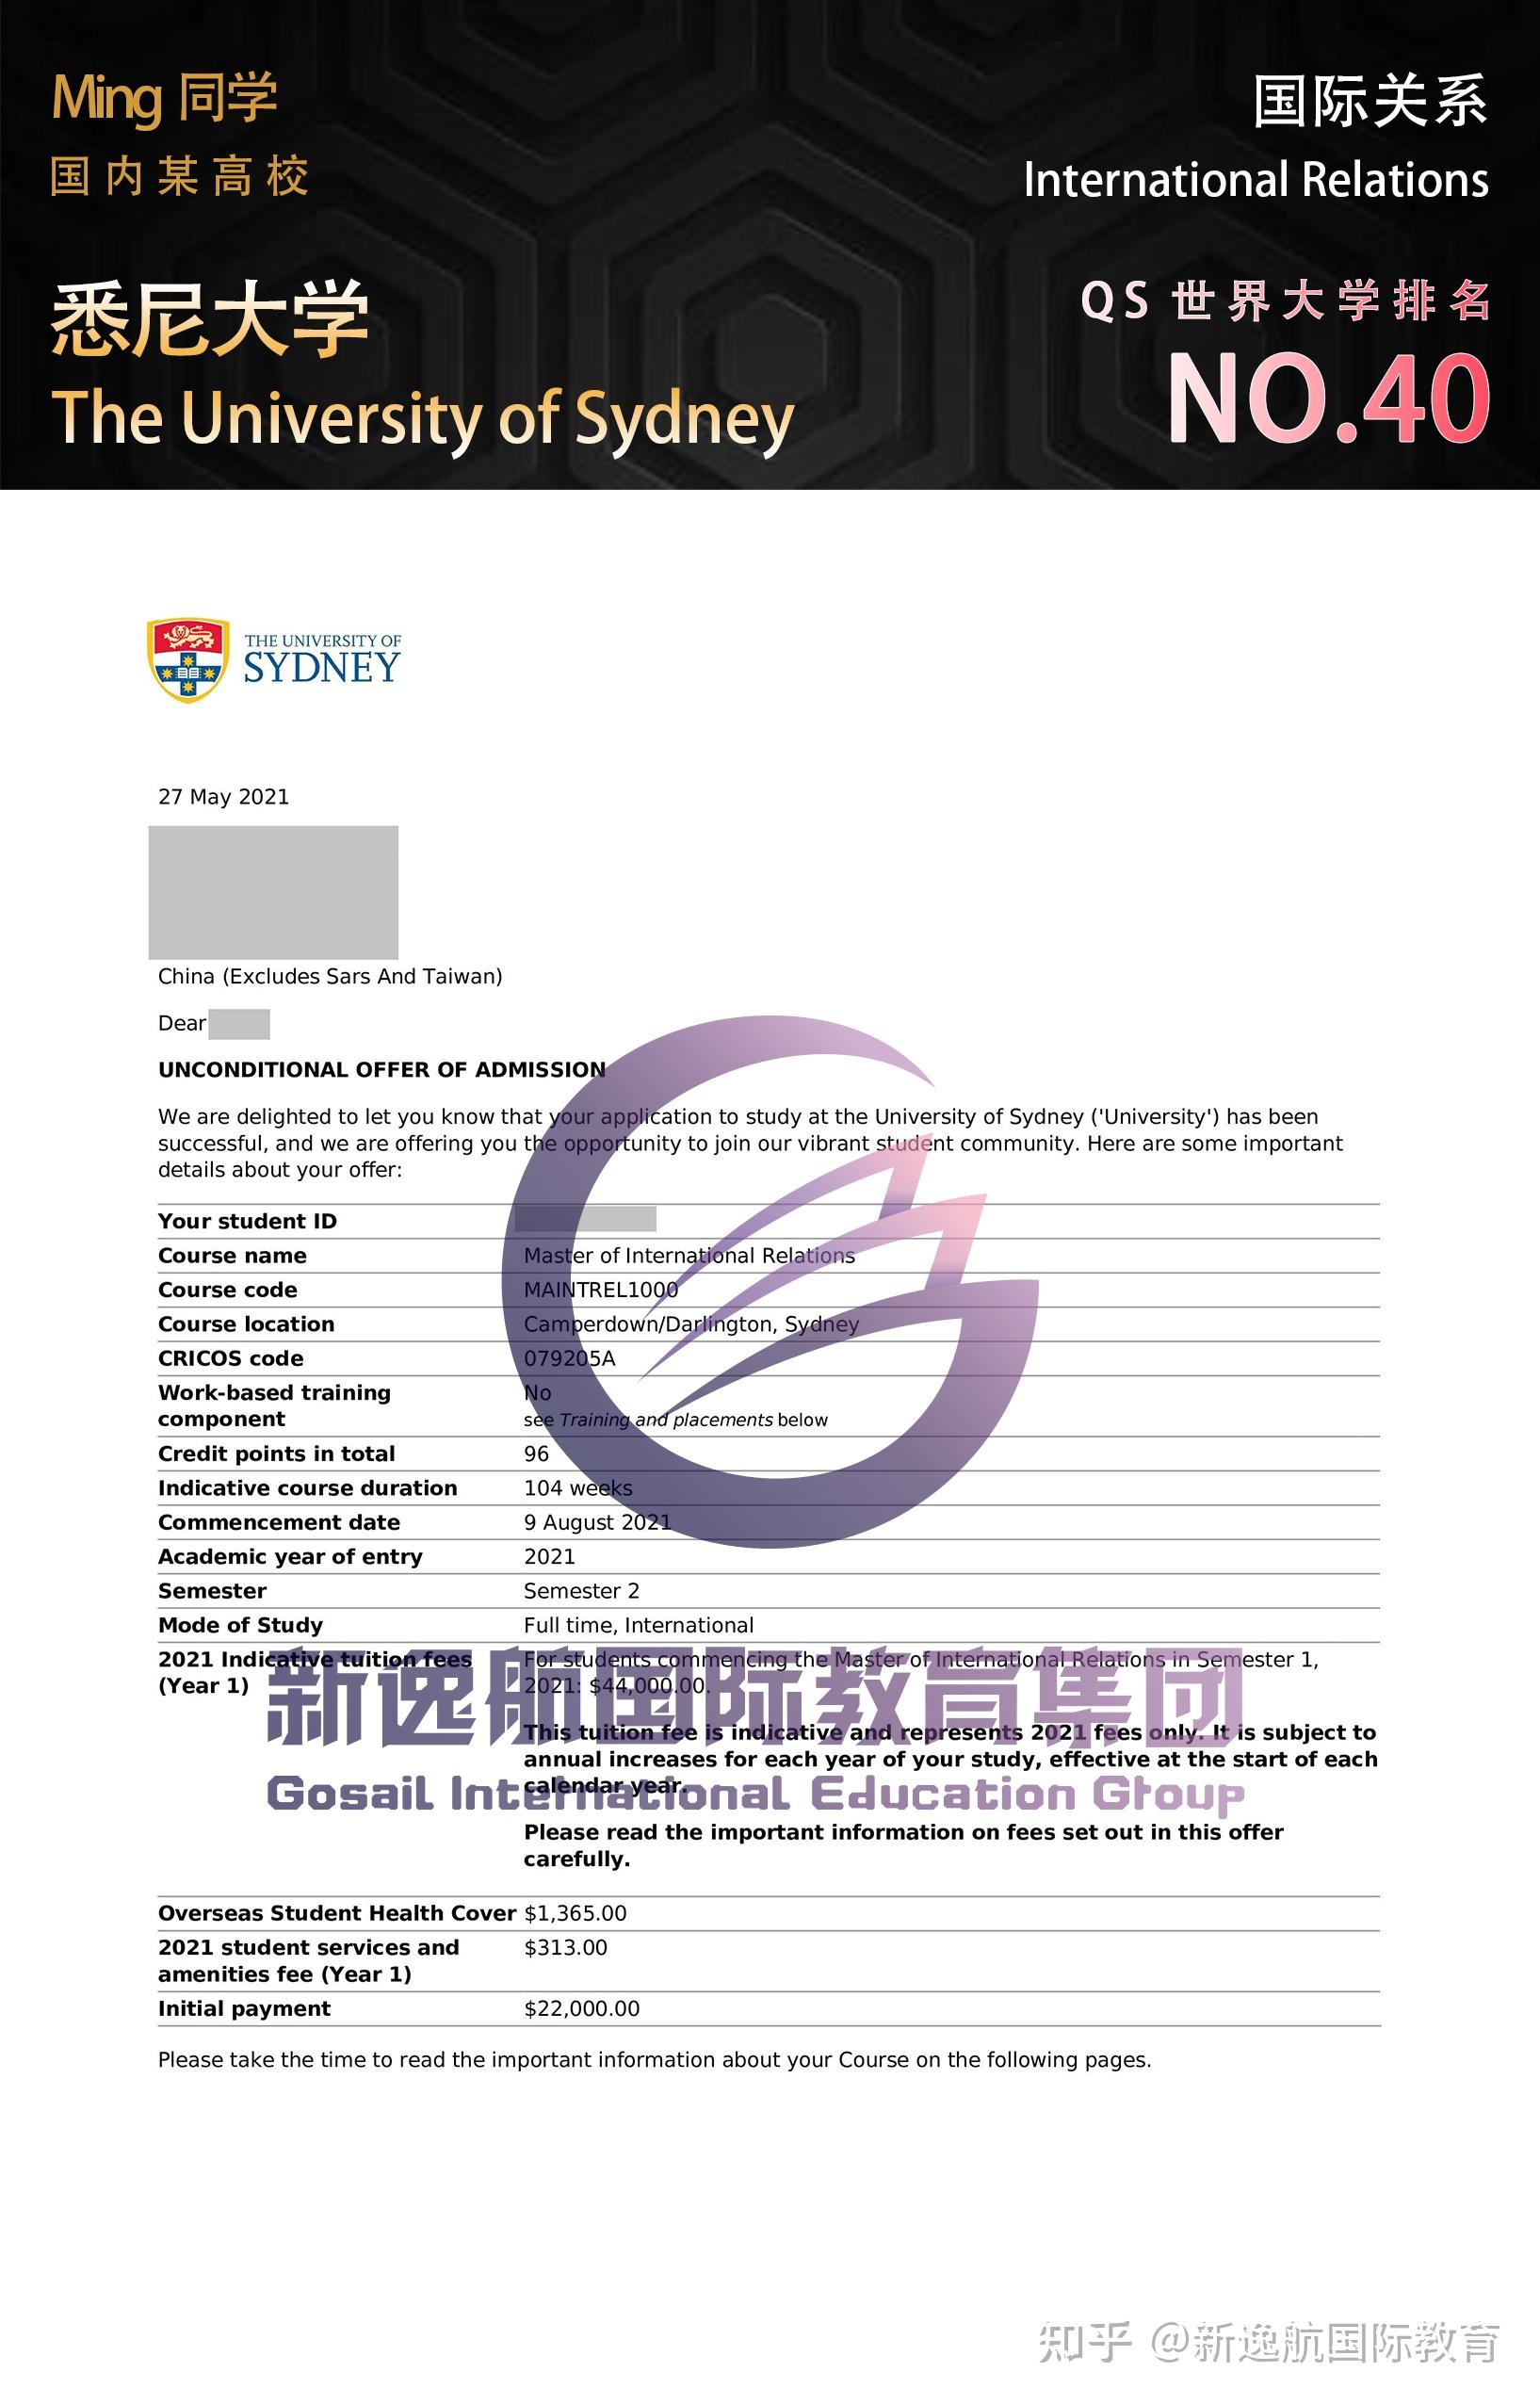 【名校offer展示】澳洲top 4悉尼大学,昆士兰大学录取